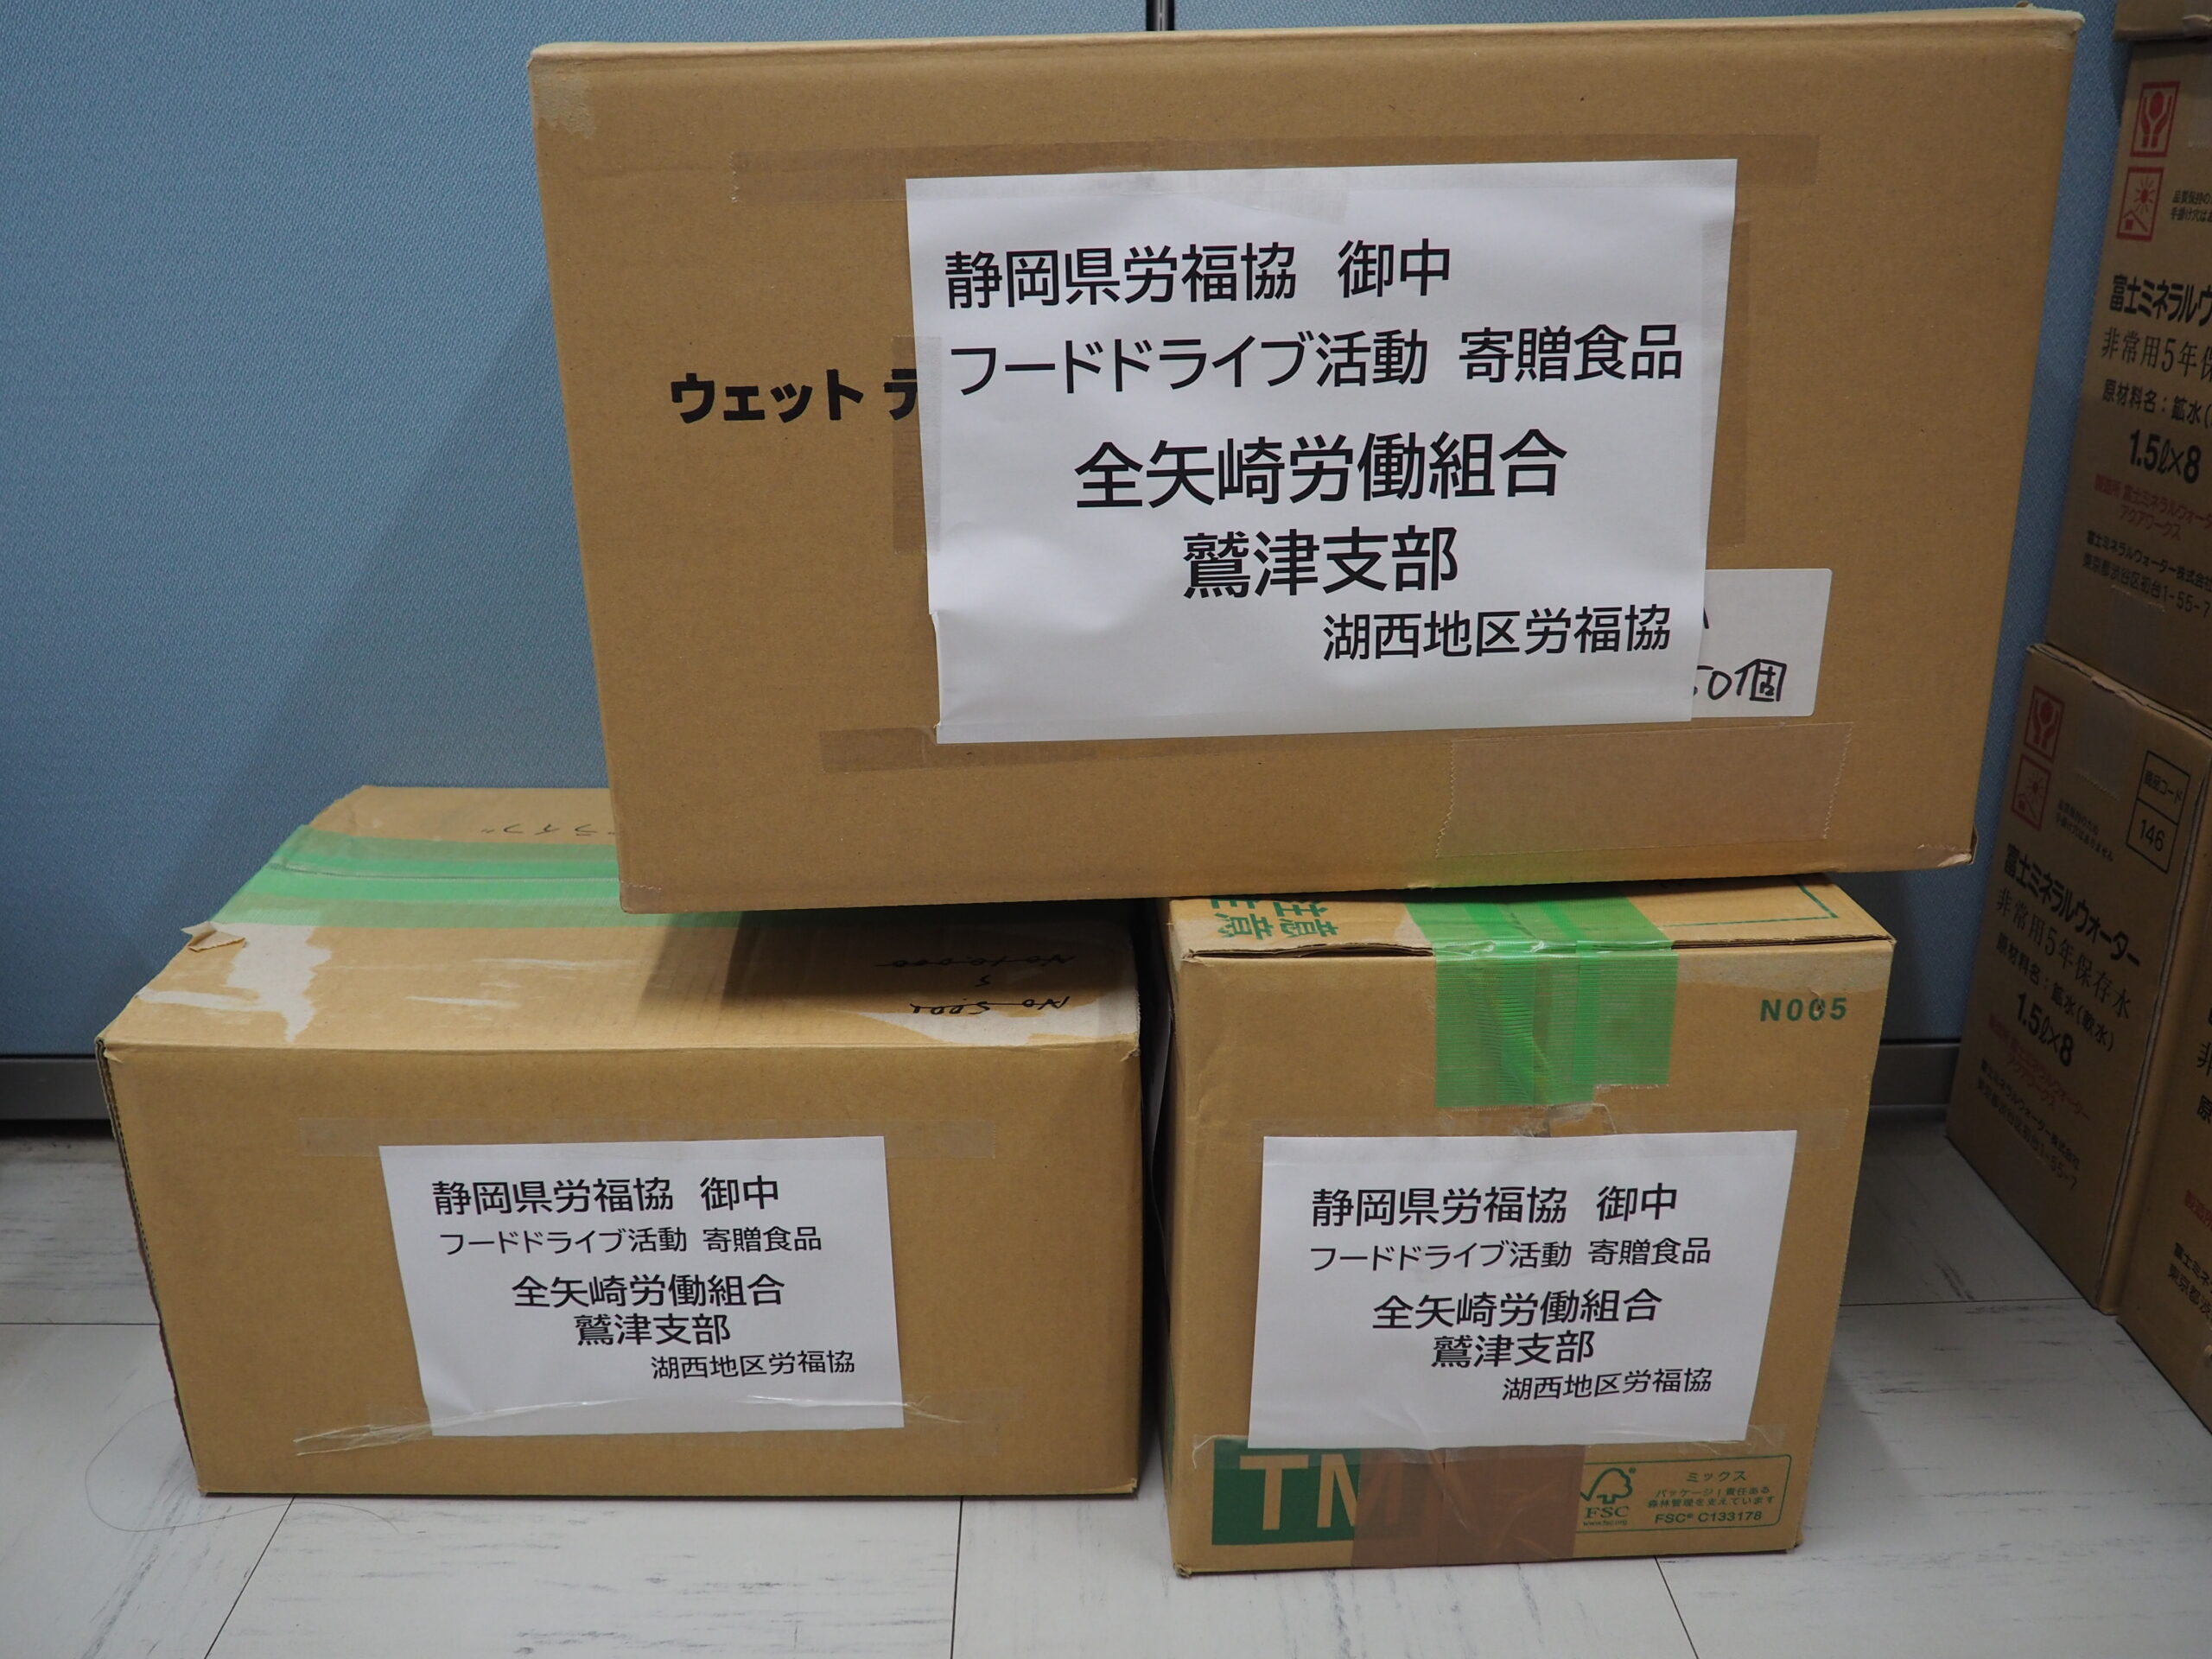 全矢崎労働組合鷲津支部様・全矢崎労働組合天竜支部様から食品を提供いただきました。